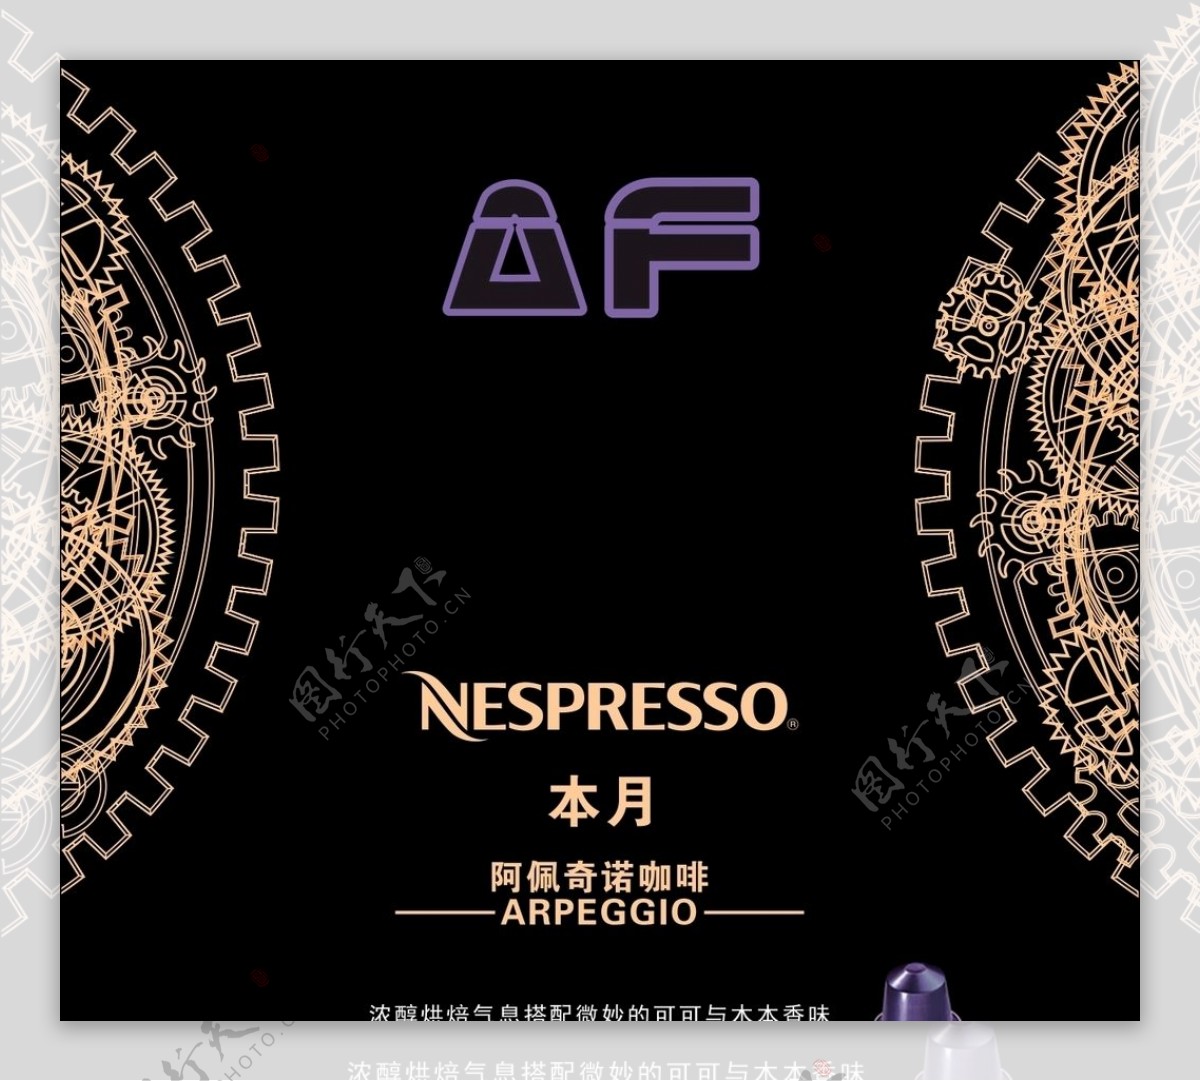 nespresso咖啡说明